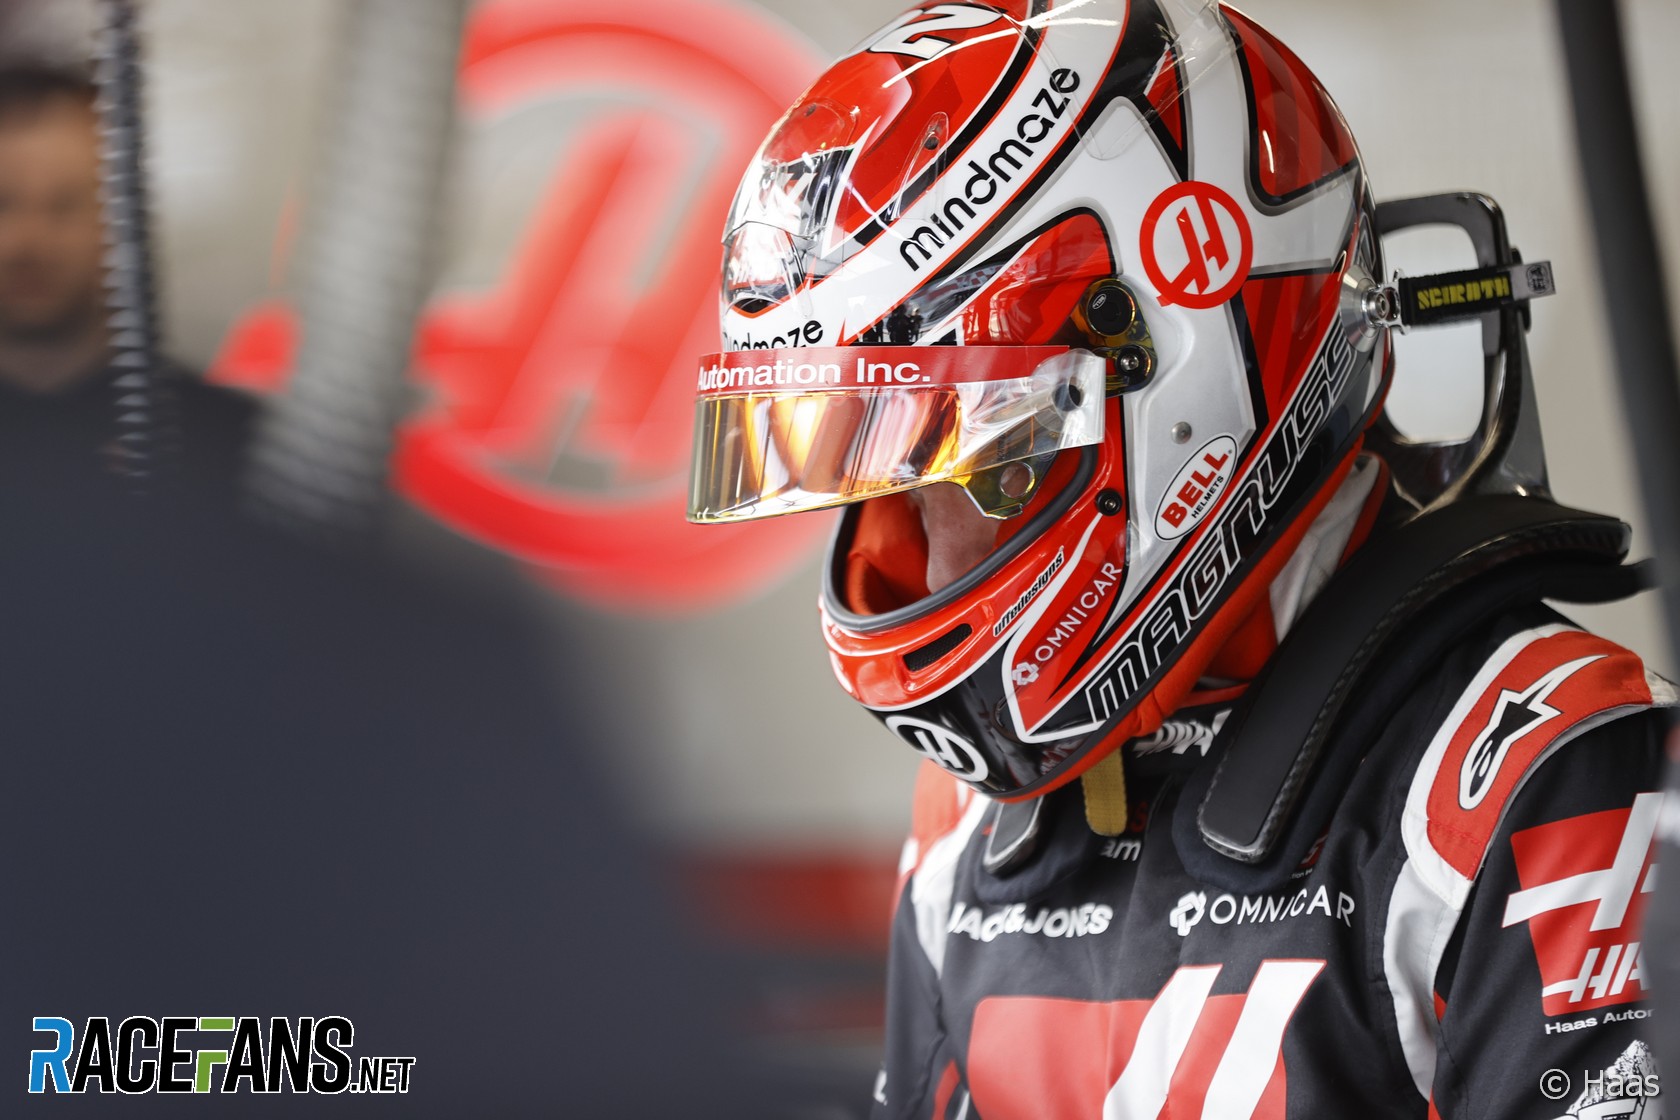 Kevin Magnussen, Haas, Circuit de Catalunya, 2020